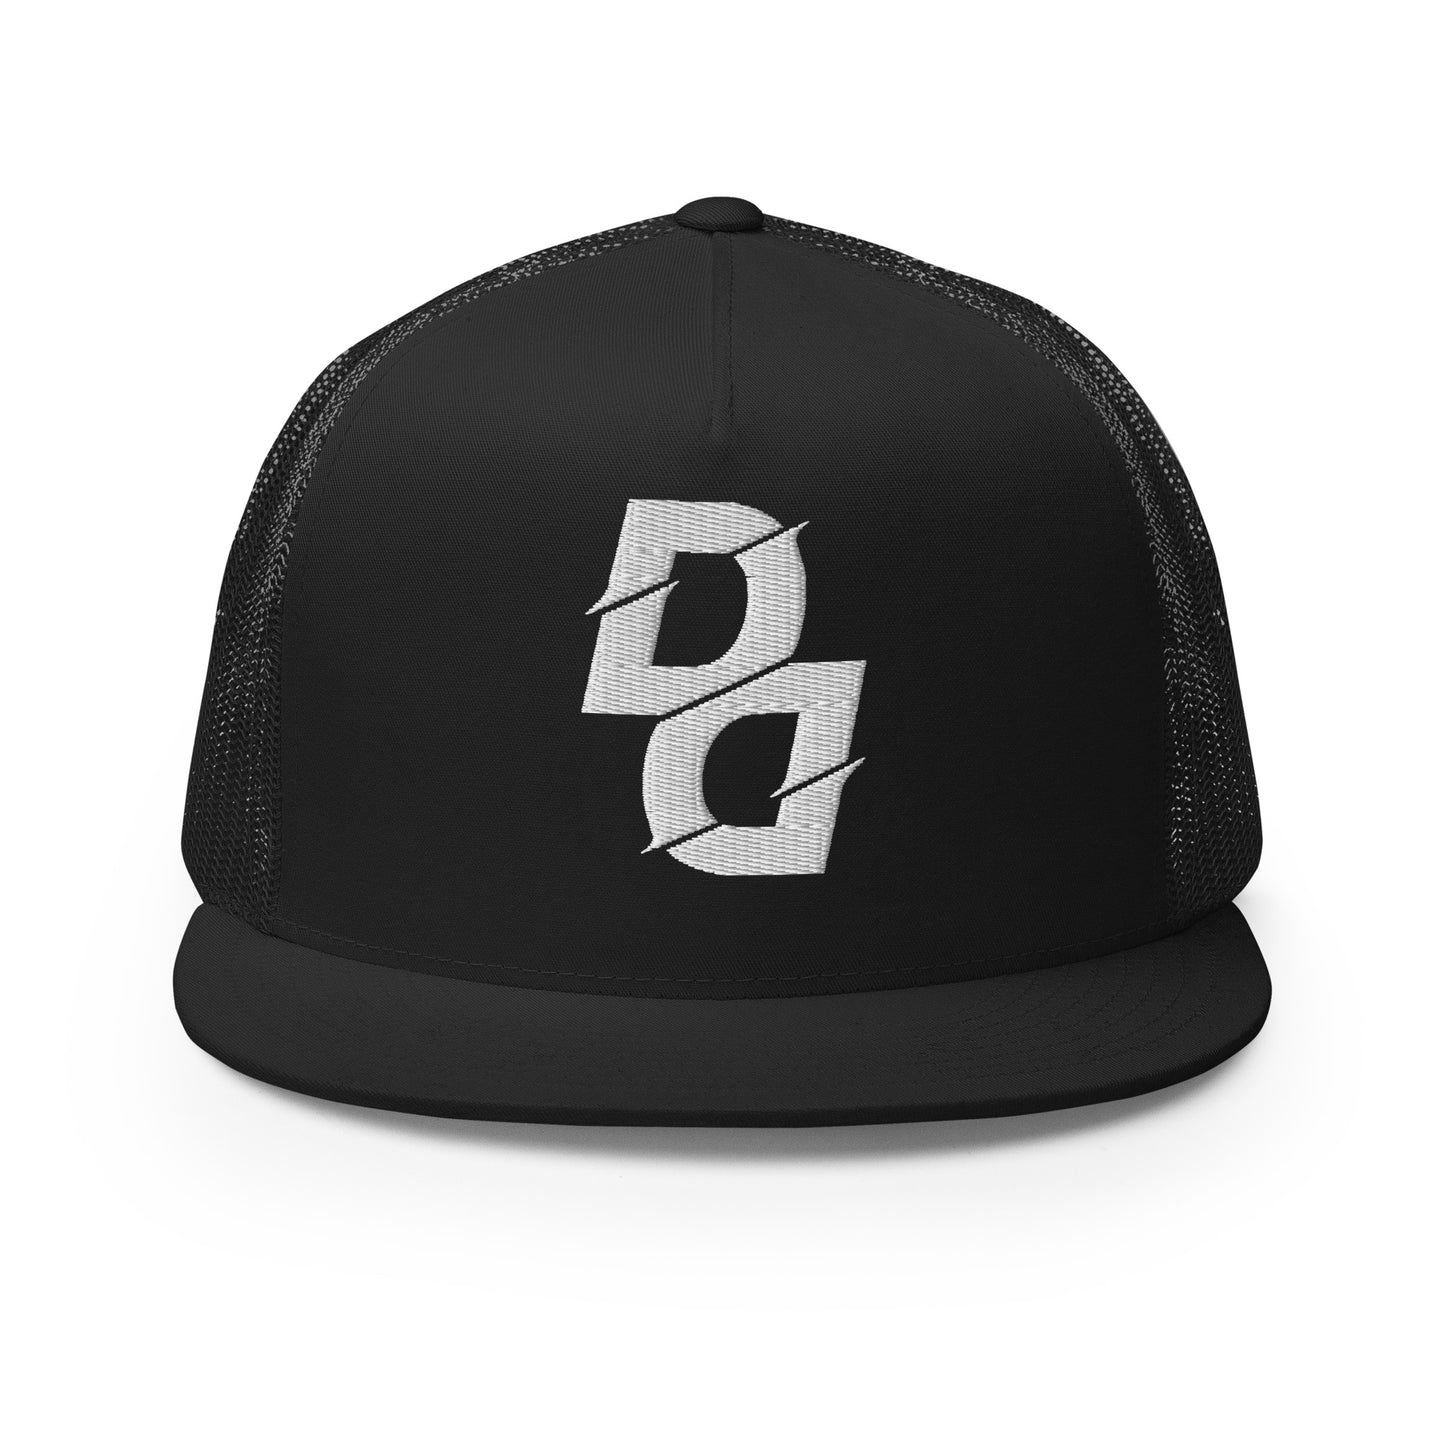 Demari Davis "DD" Trucker Cap